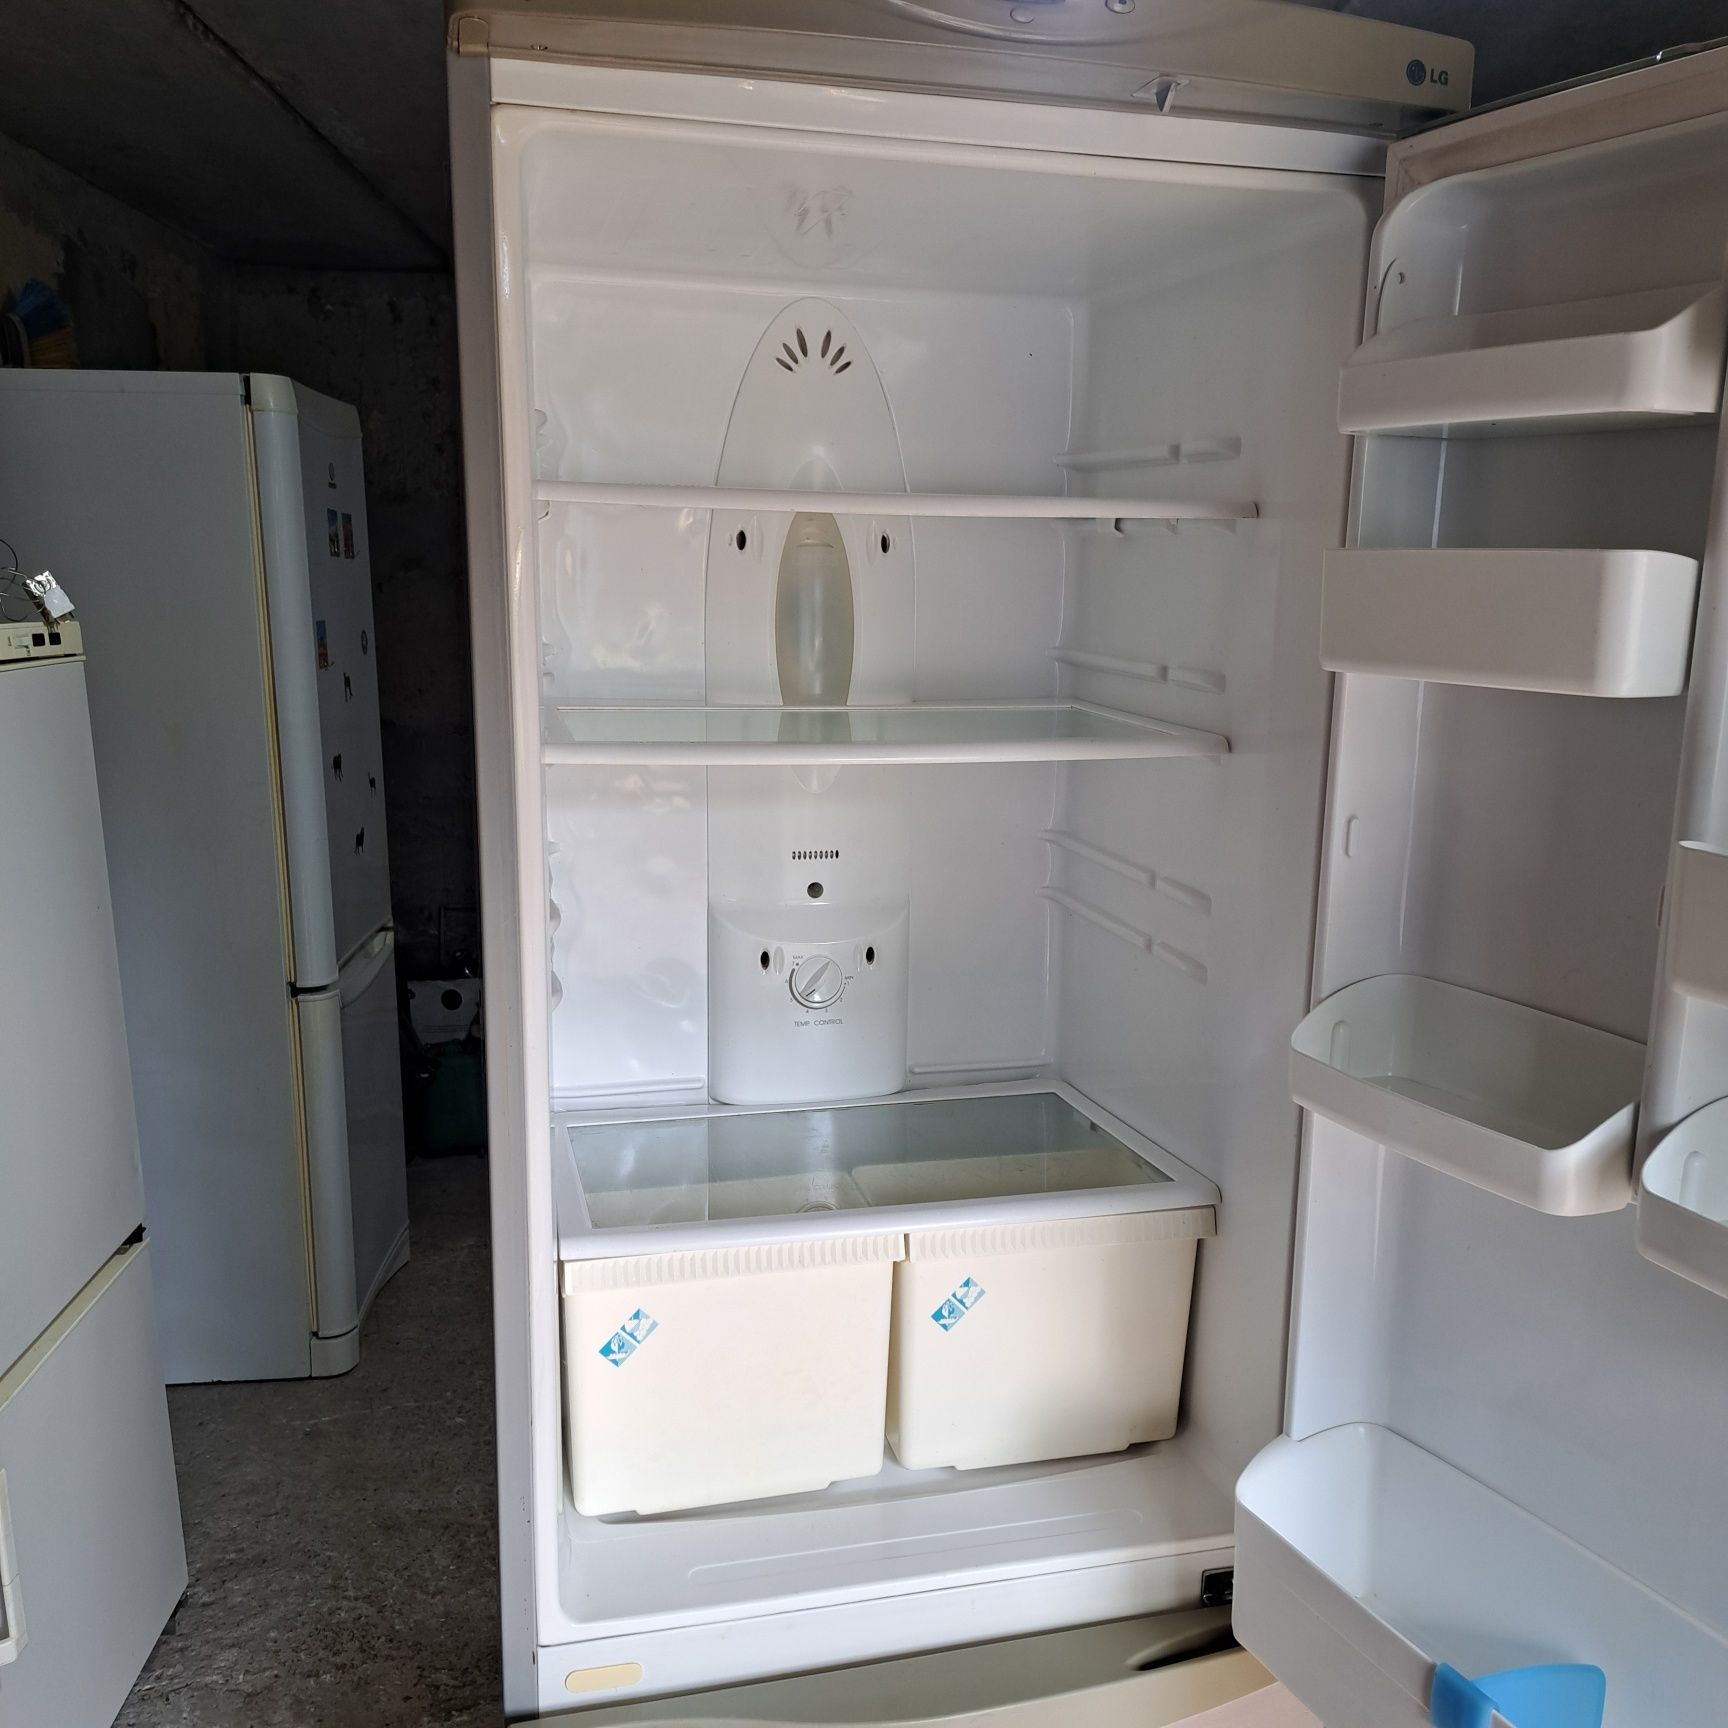 Продам холодильник LG no frost